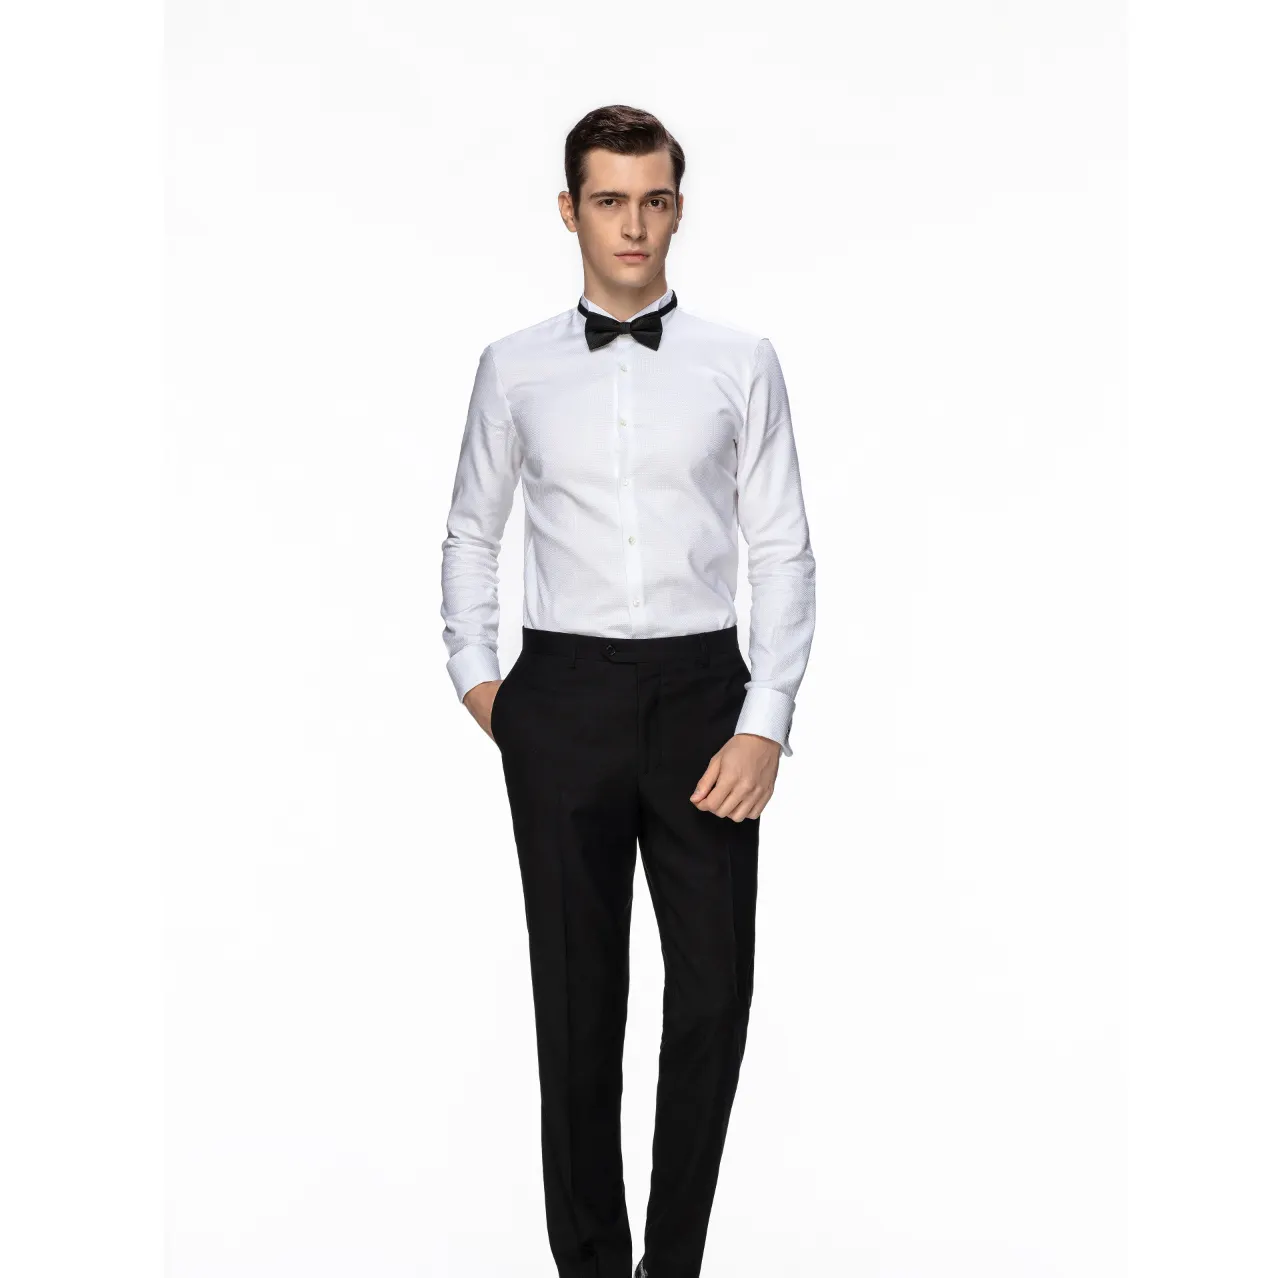 Kutesmart Latest Design Elegant Party Formal Tuxedo Shirts For Men